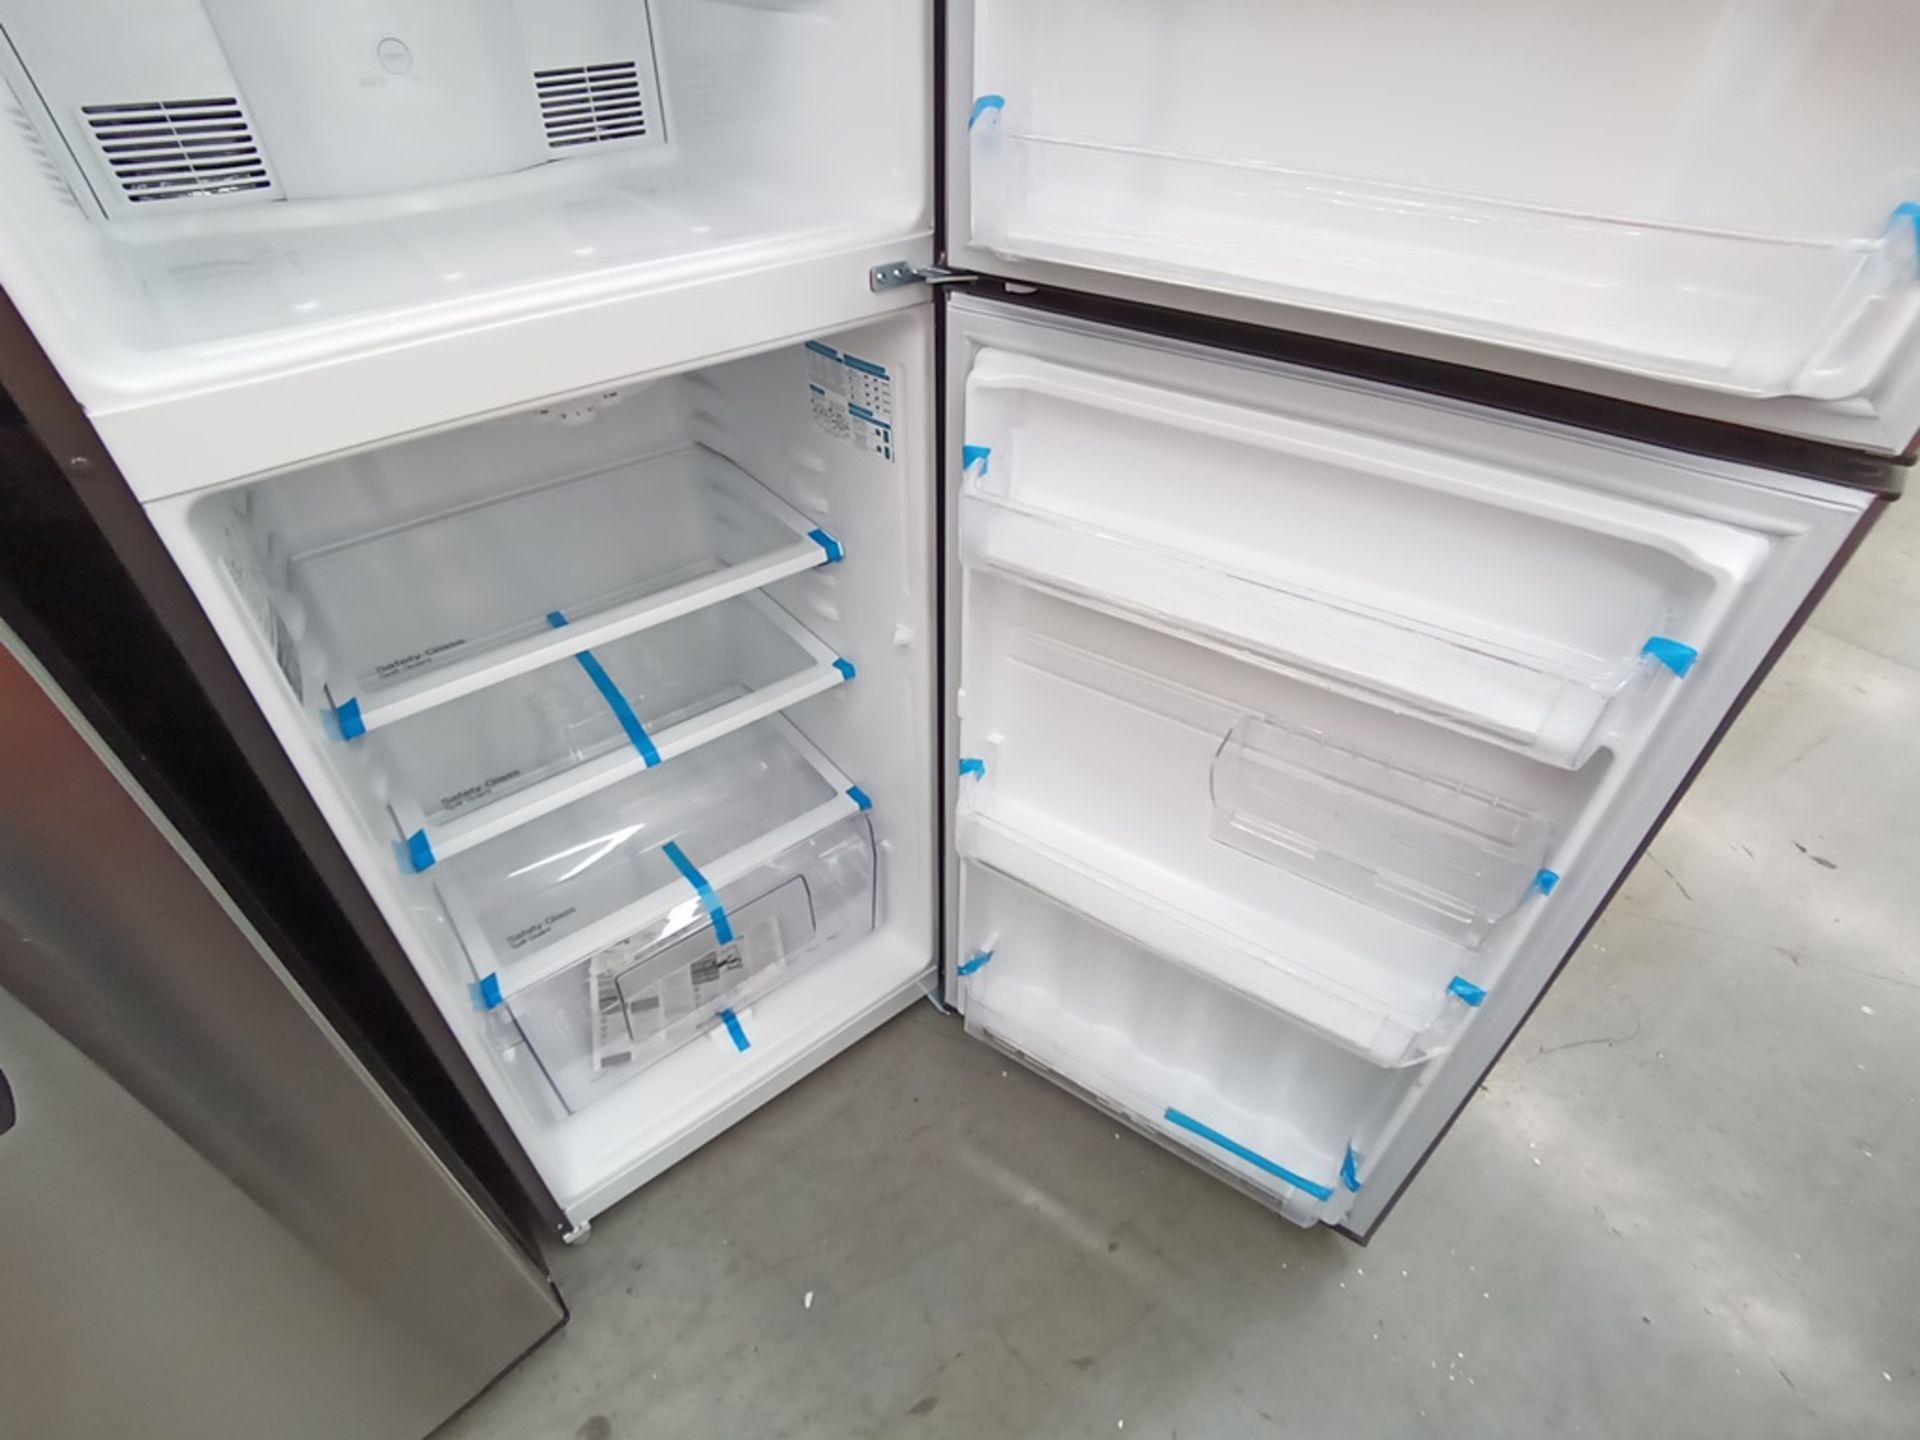 Lote de 2 refrigeradores contiene: 1 Refrigerador con dispensador de agua, Marca Winia, Modelo DFR- - Image 13 of 15